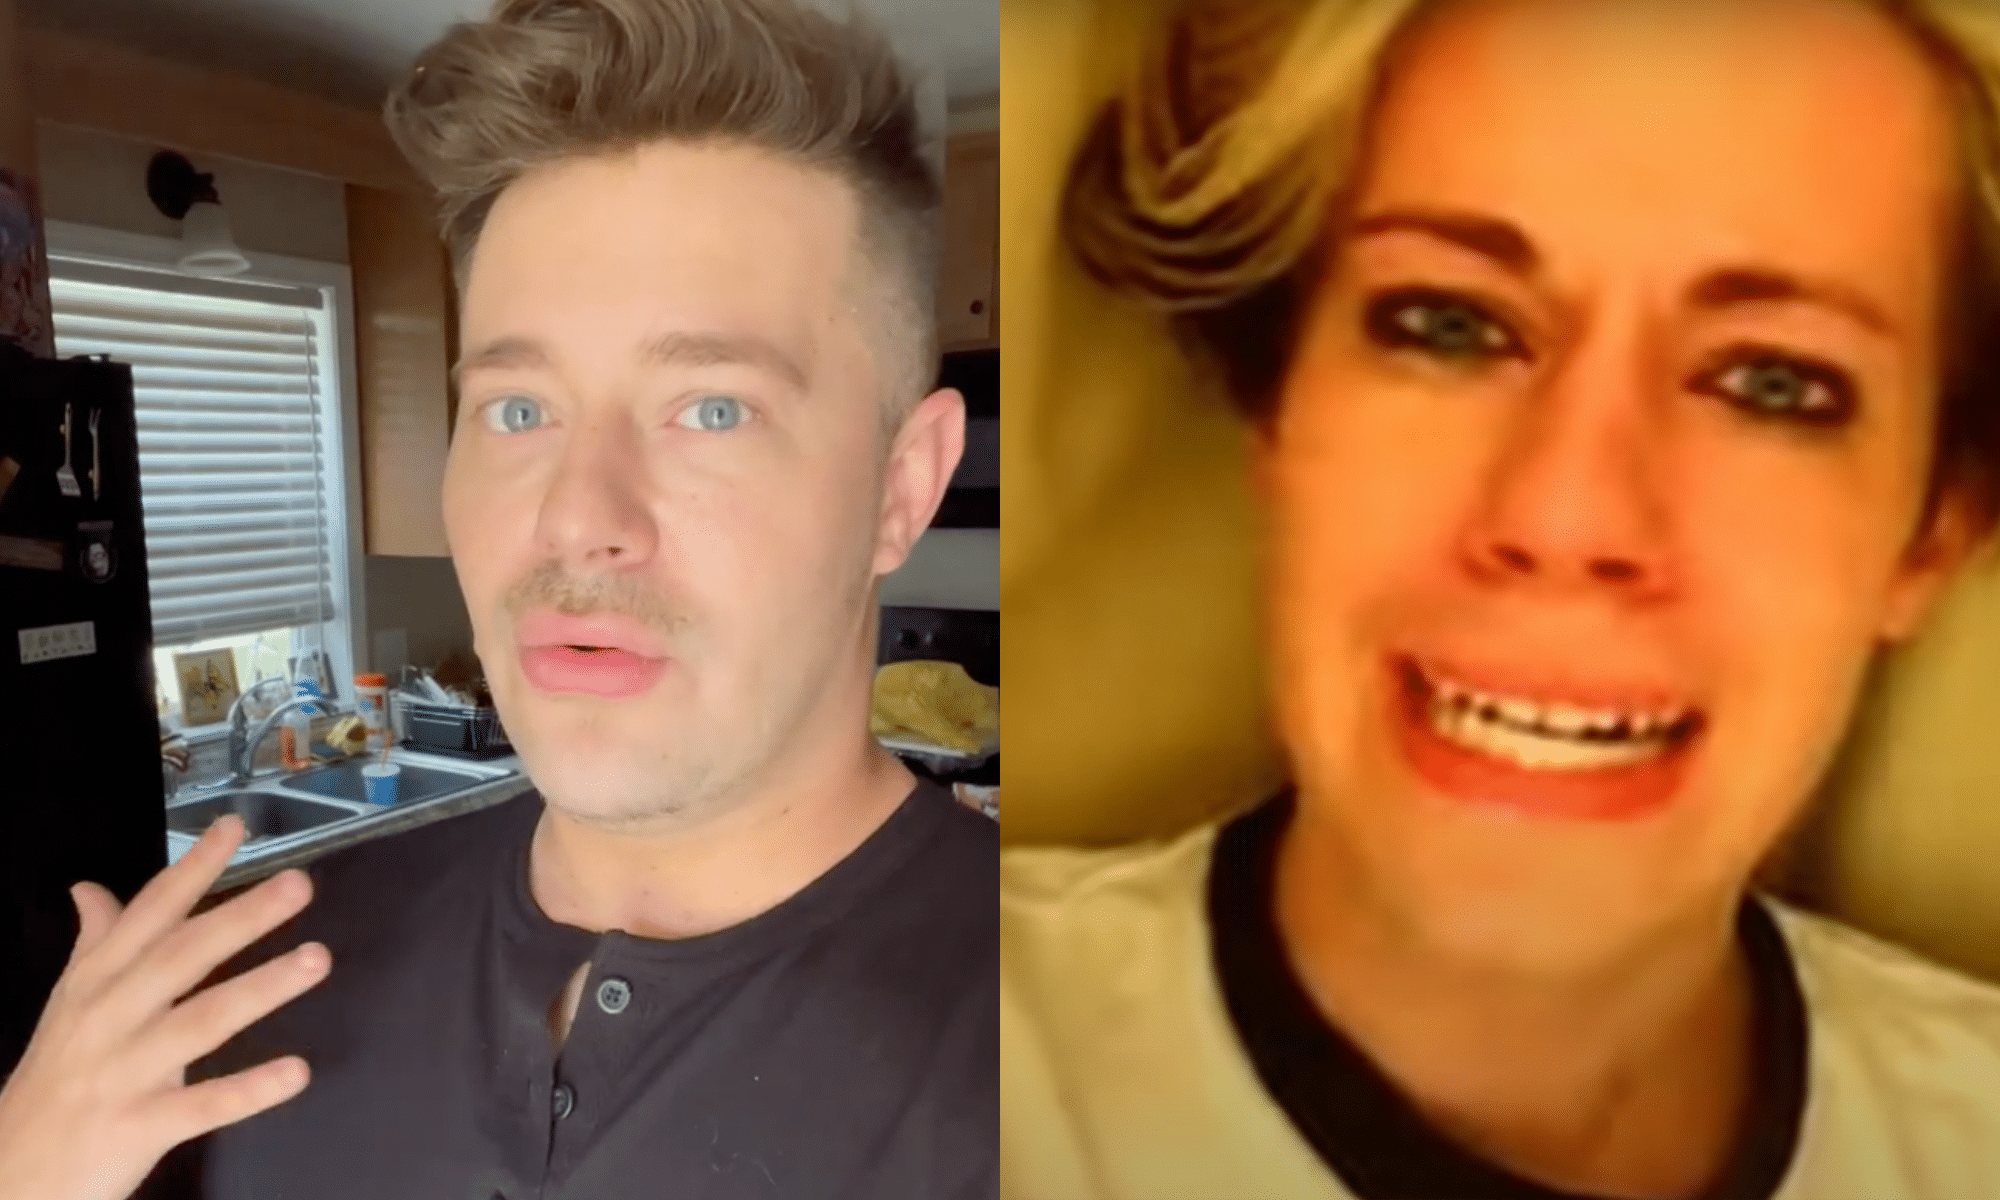 sympatisk energi Indeholde Chris Crocker defends Britney Spears in new Instagram video